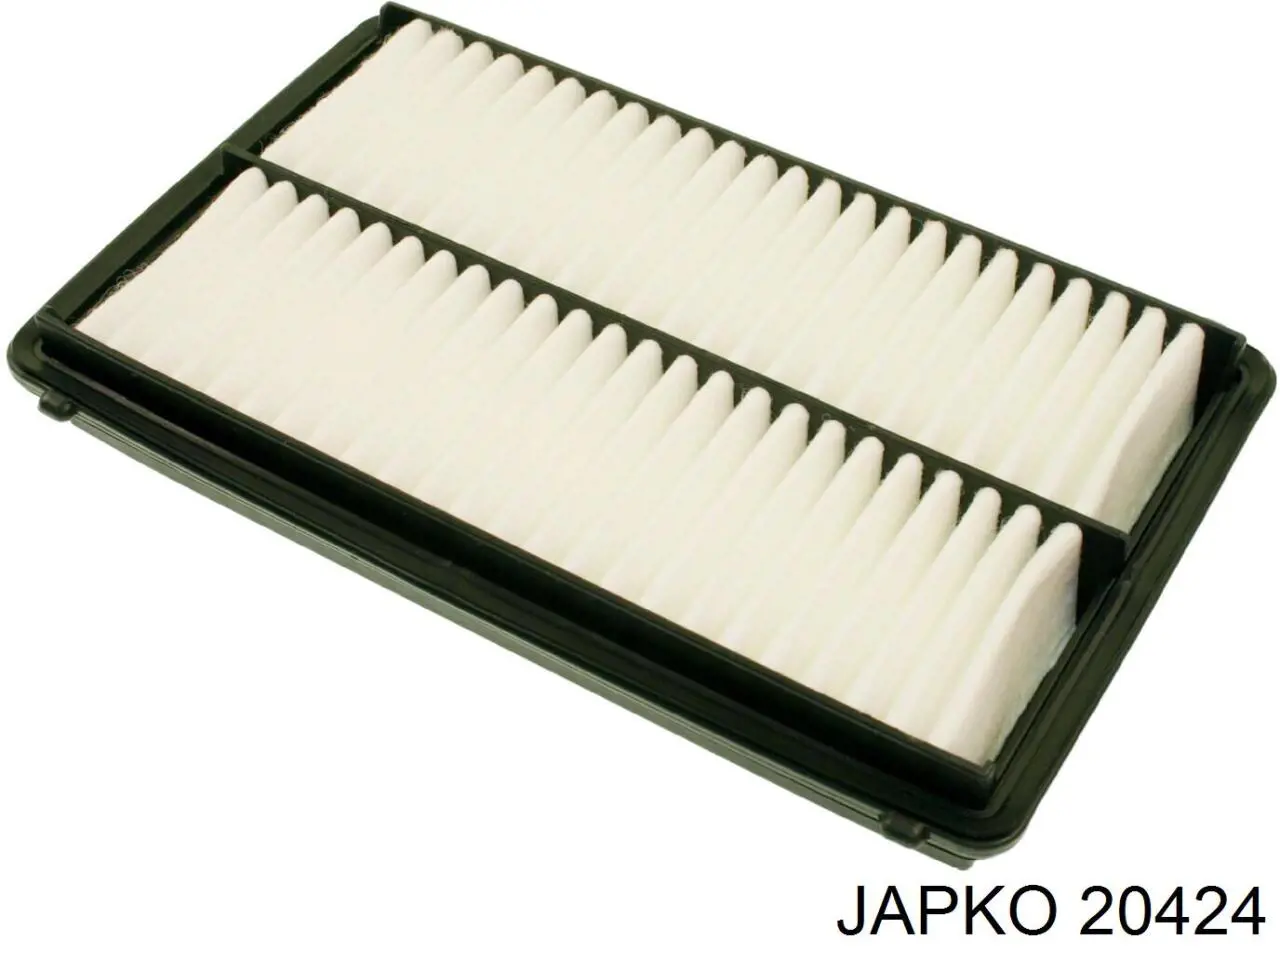 20424 Japko filtro de aire